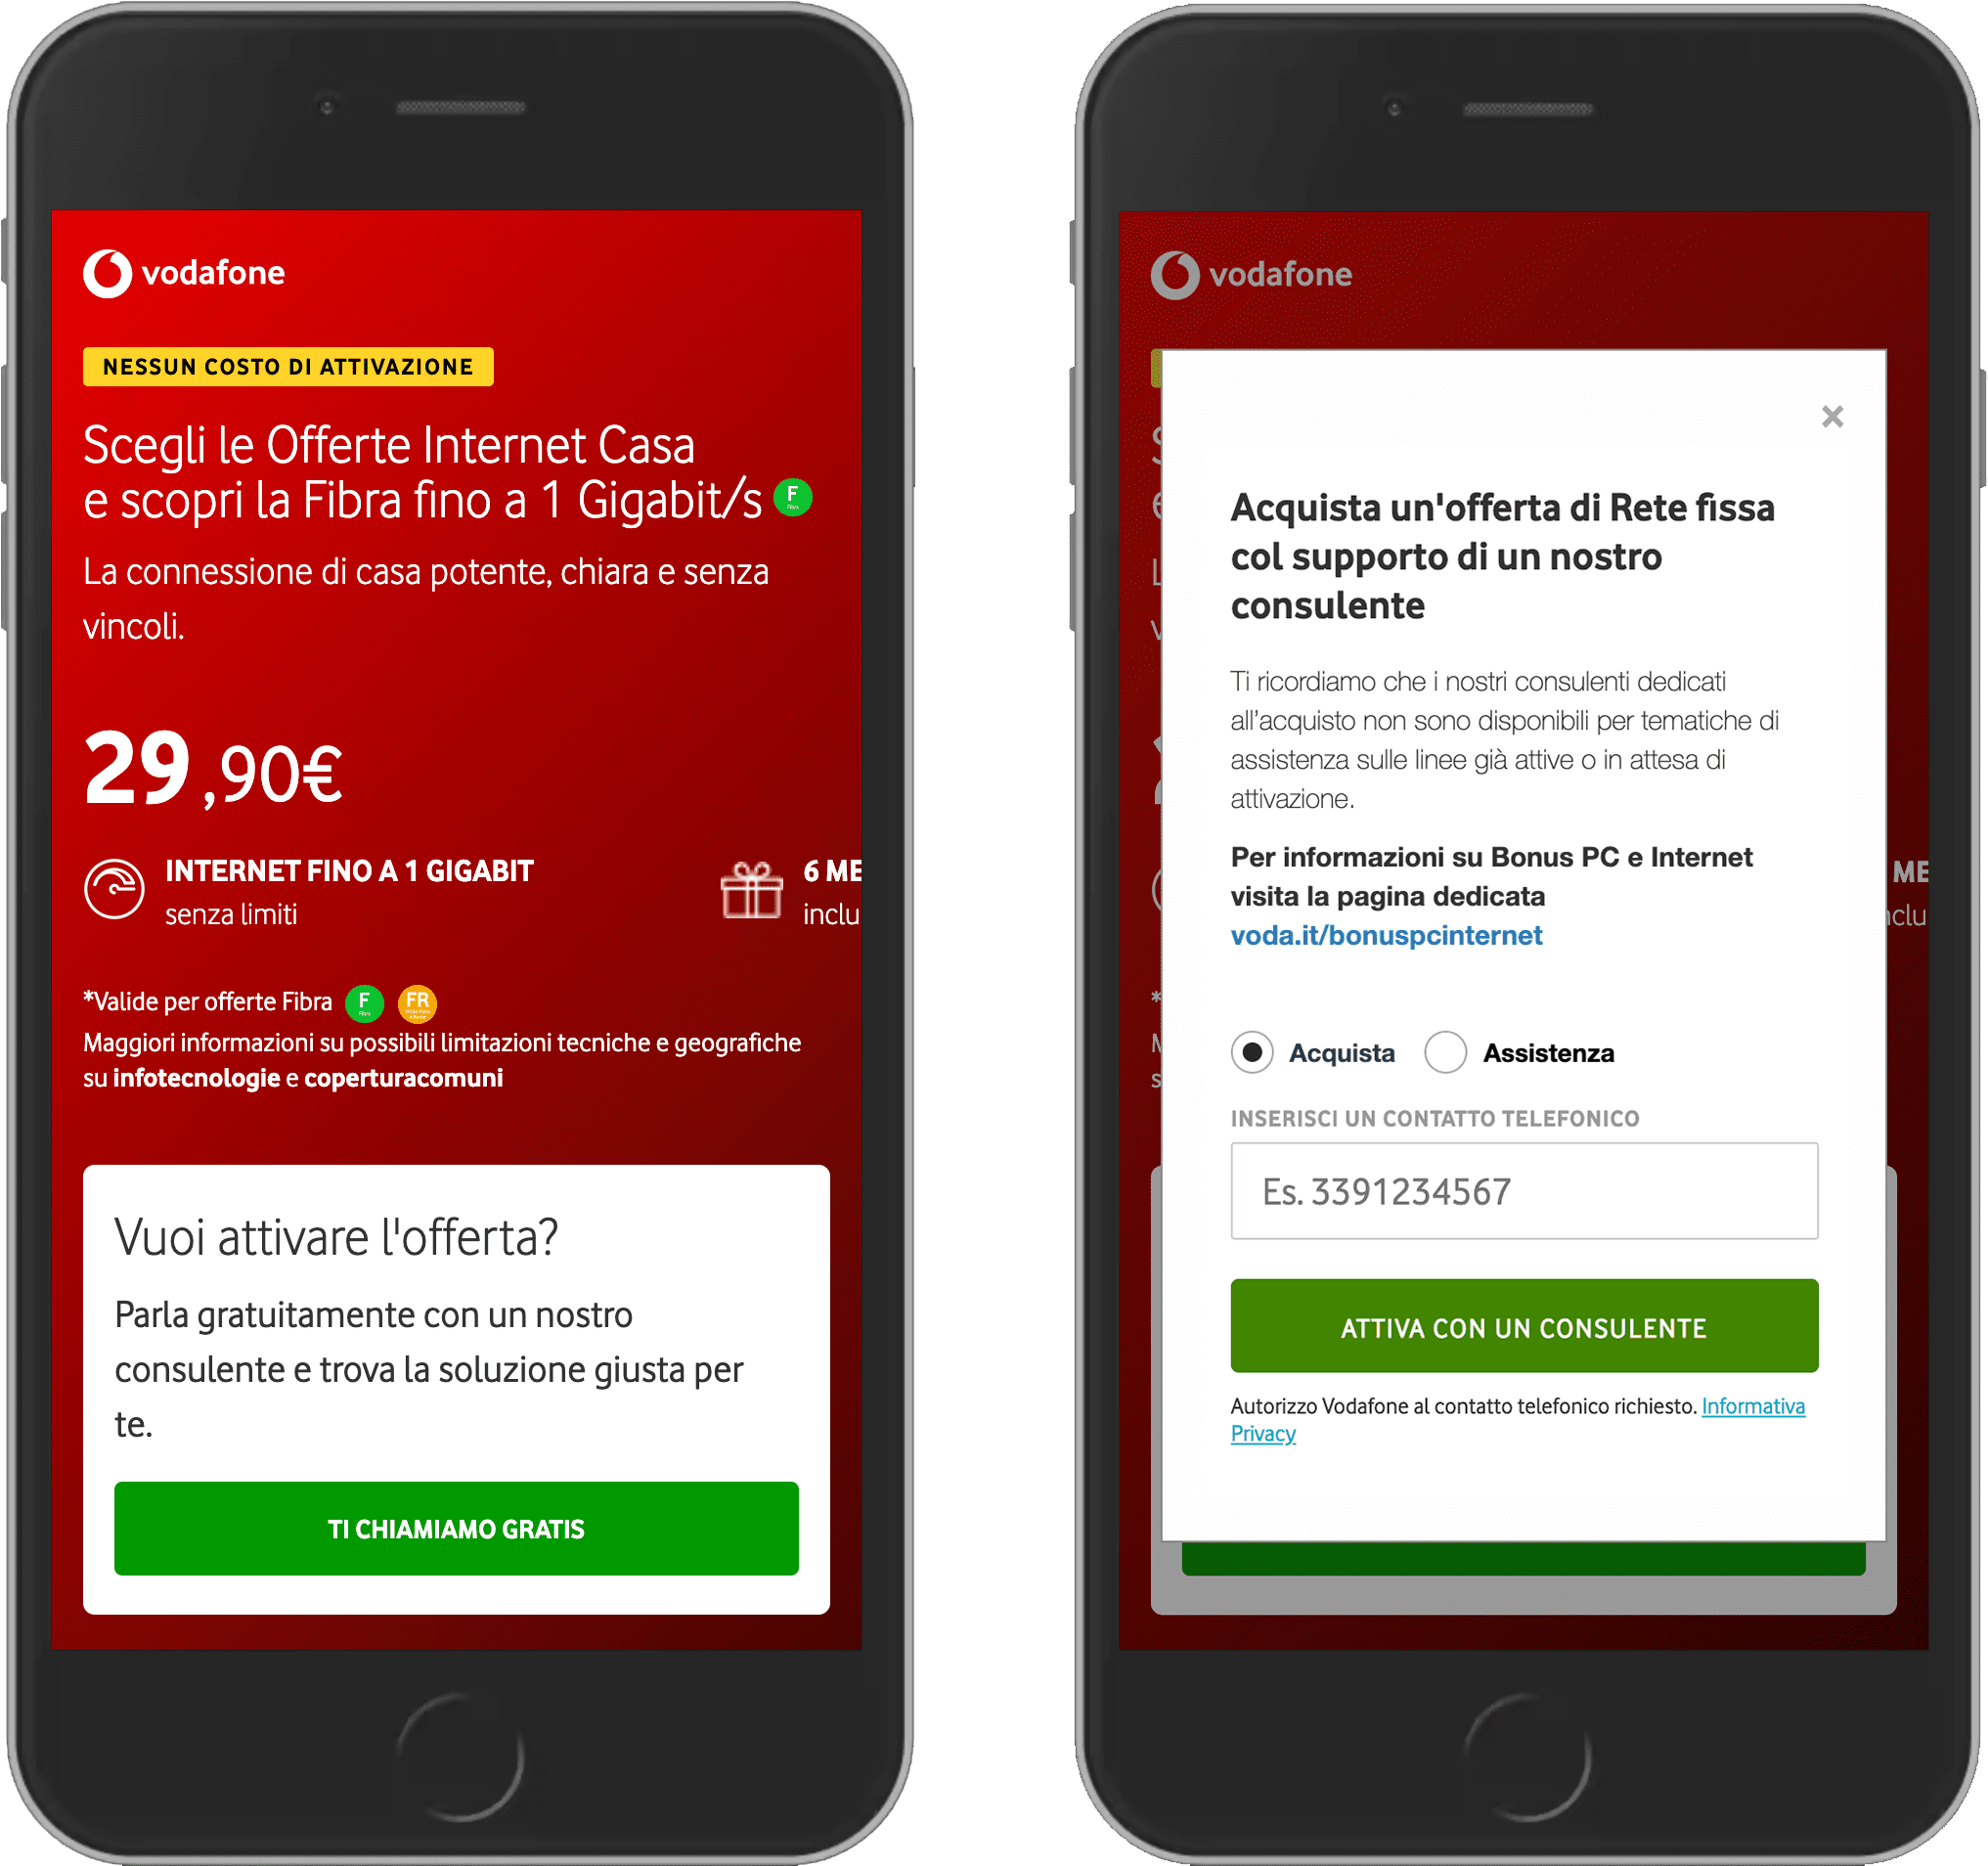 שני צילומי מסך של האתר של Vodafone.